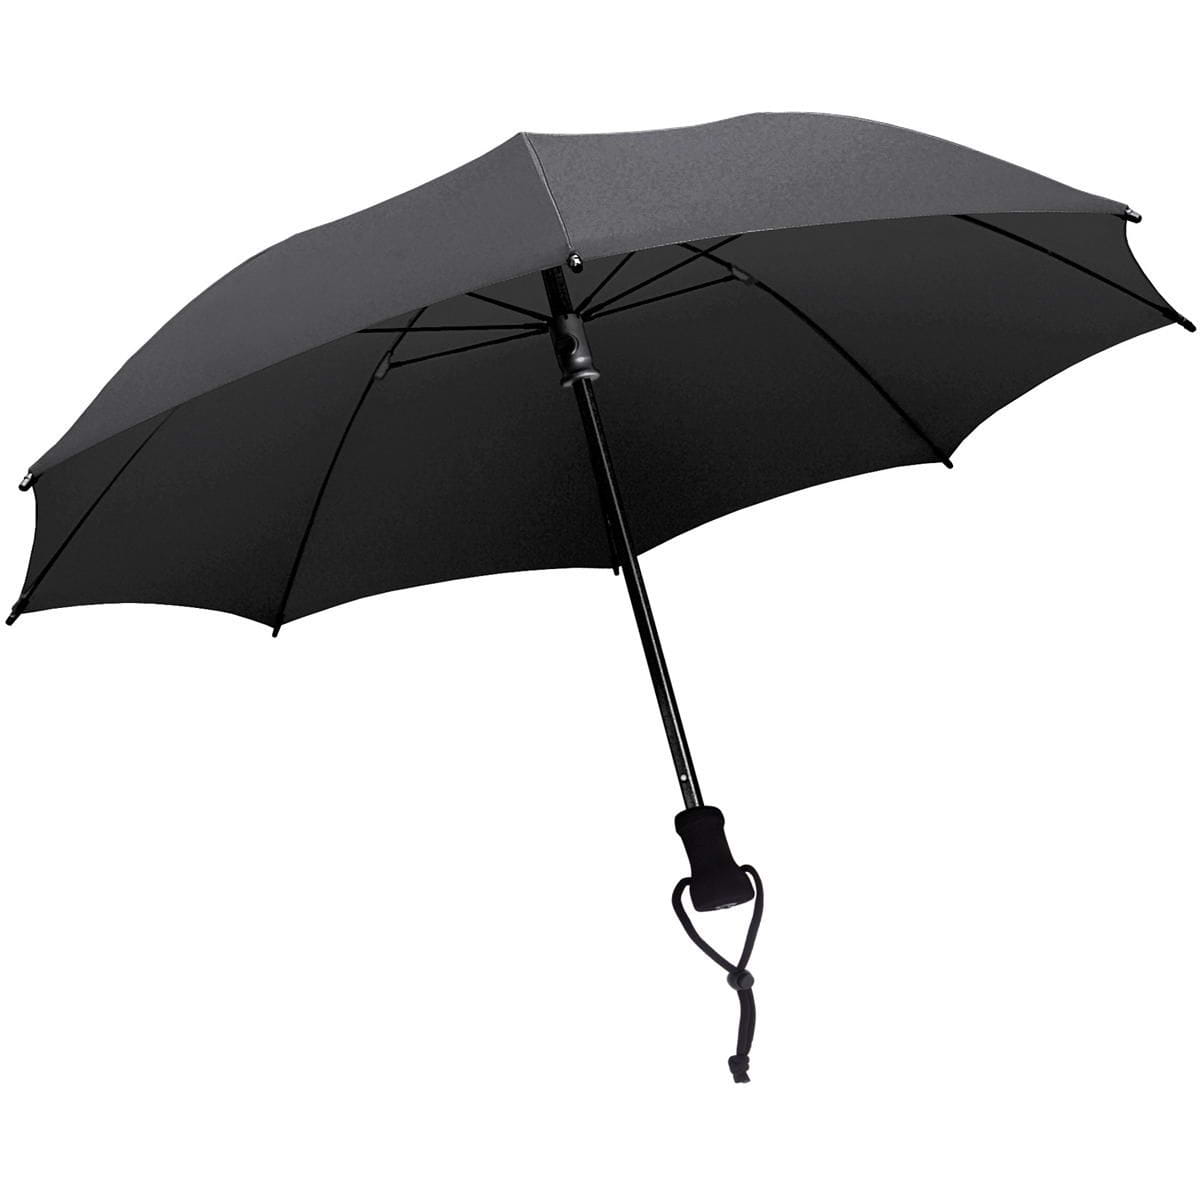 online - Outdoor birdiepal EuroSchirm Regenschirm kaufen